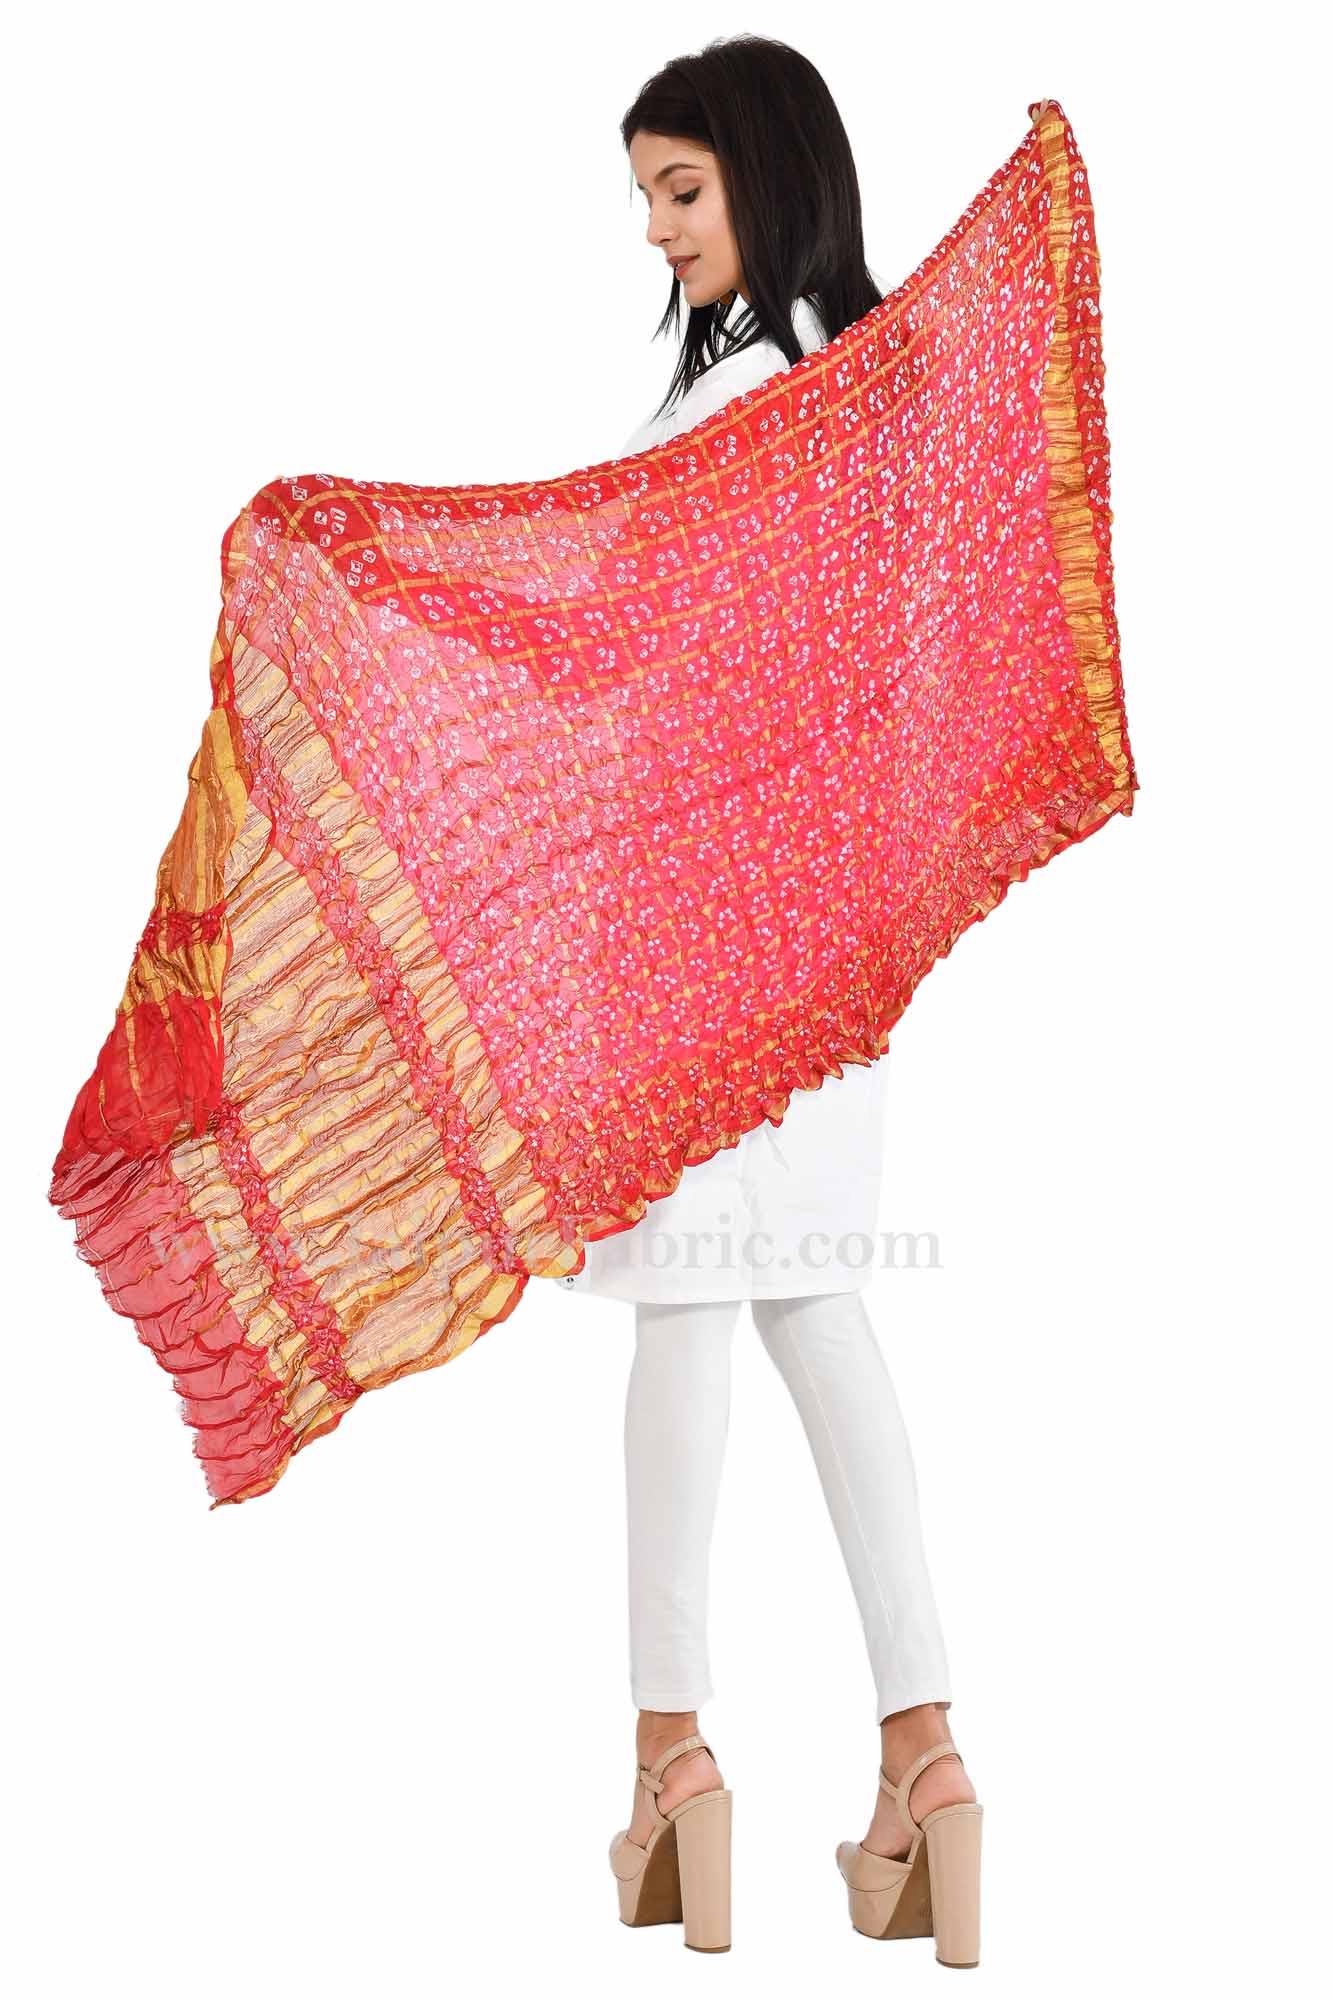 Gharchola Art Silk Red Jaipuri Rajasthani Bandhni Bandhej Multi-Colored Heavy Dupatta Chunni